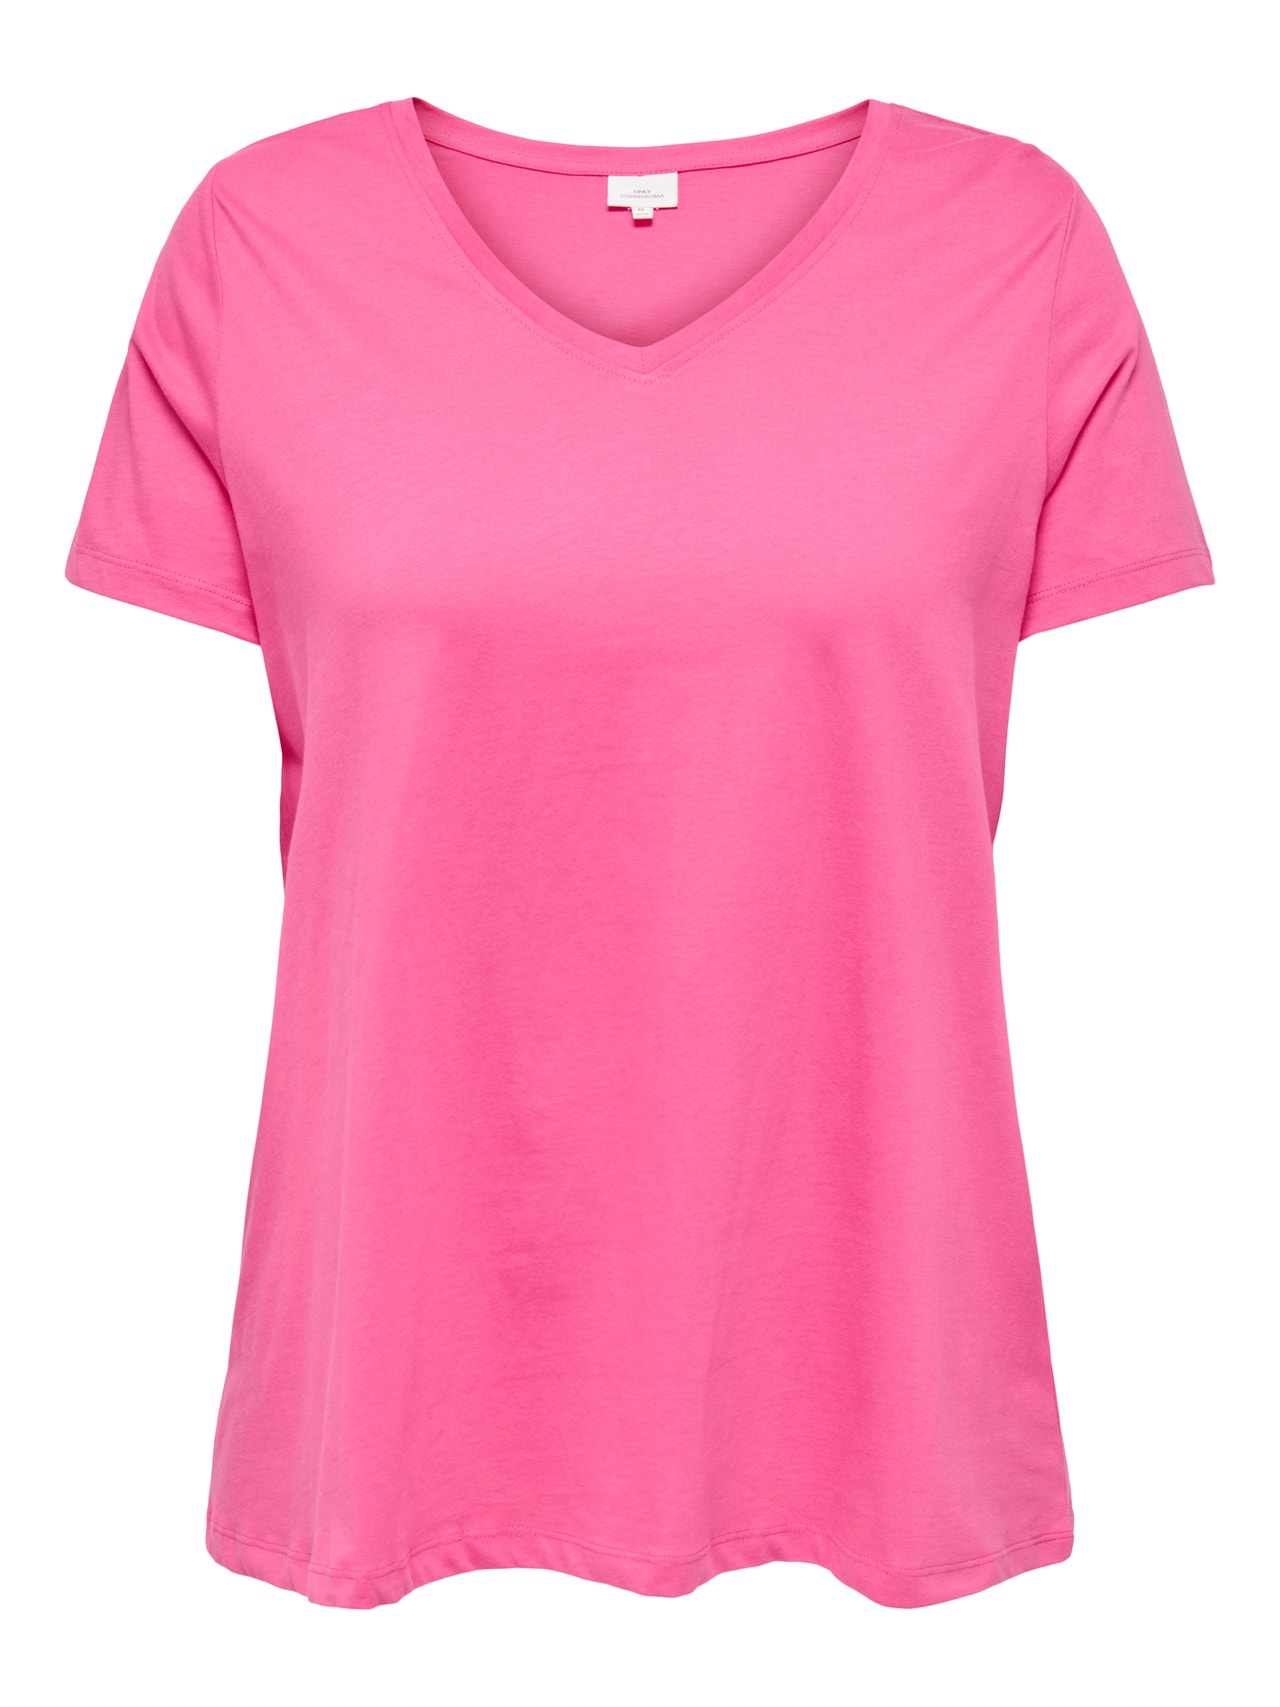 ONLY Camisetas Corte regular Cuello en V -Fandango Pink - 15322776